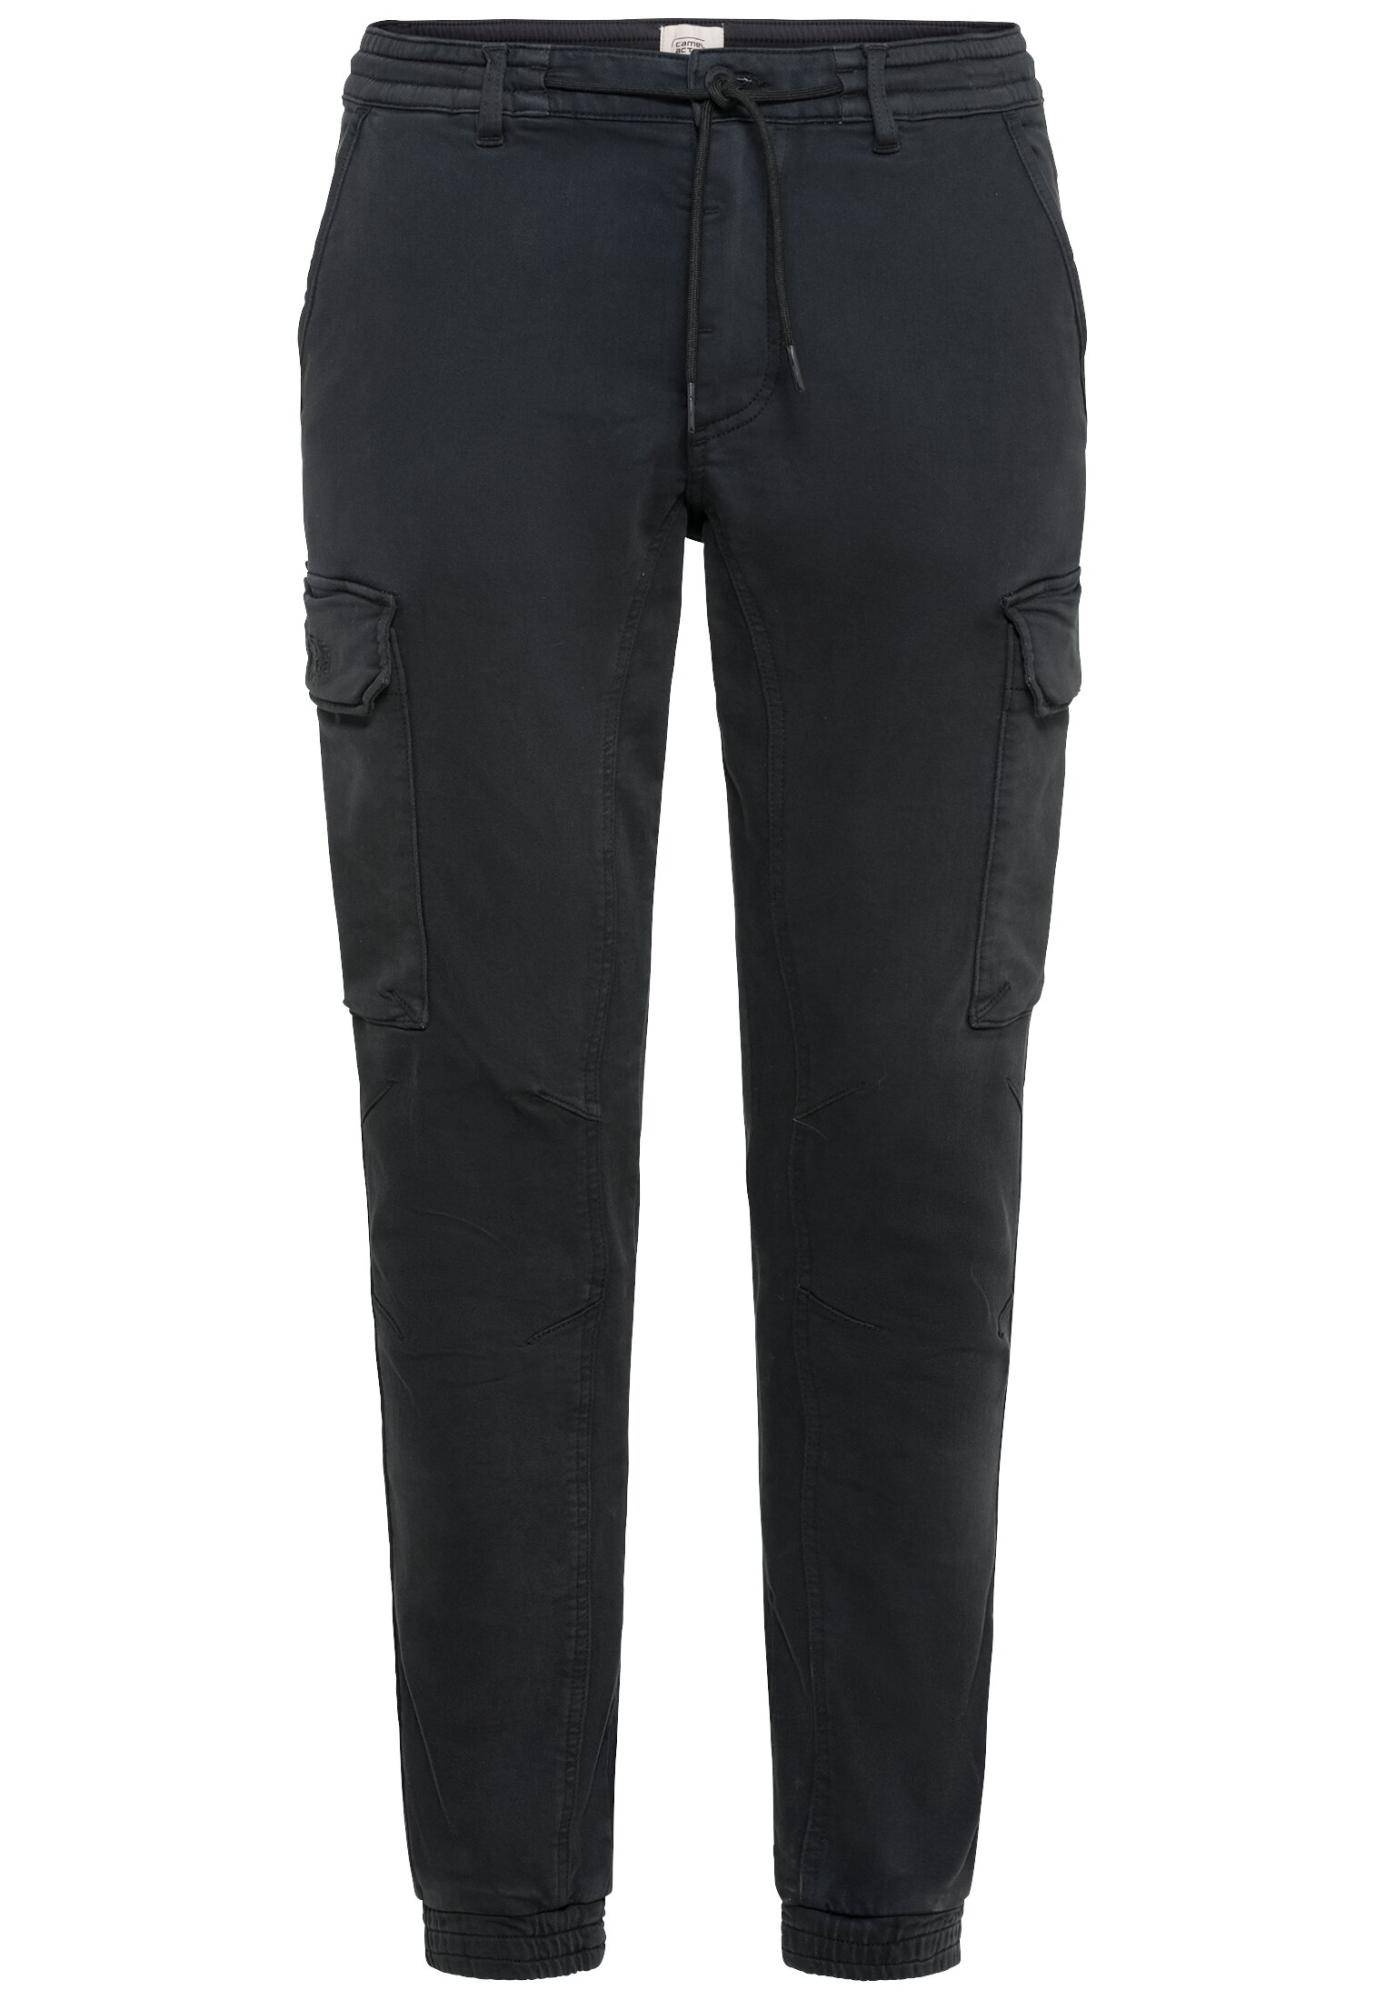 Мужские брюки Camel Active, серые, цвет серый, размер 33 - фото 1